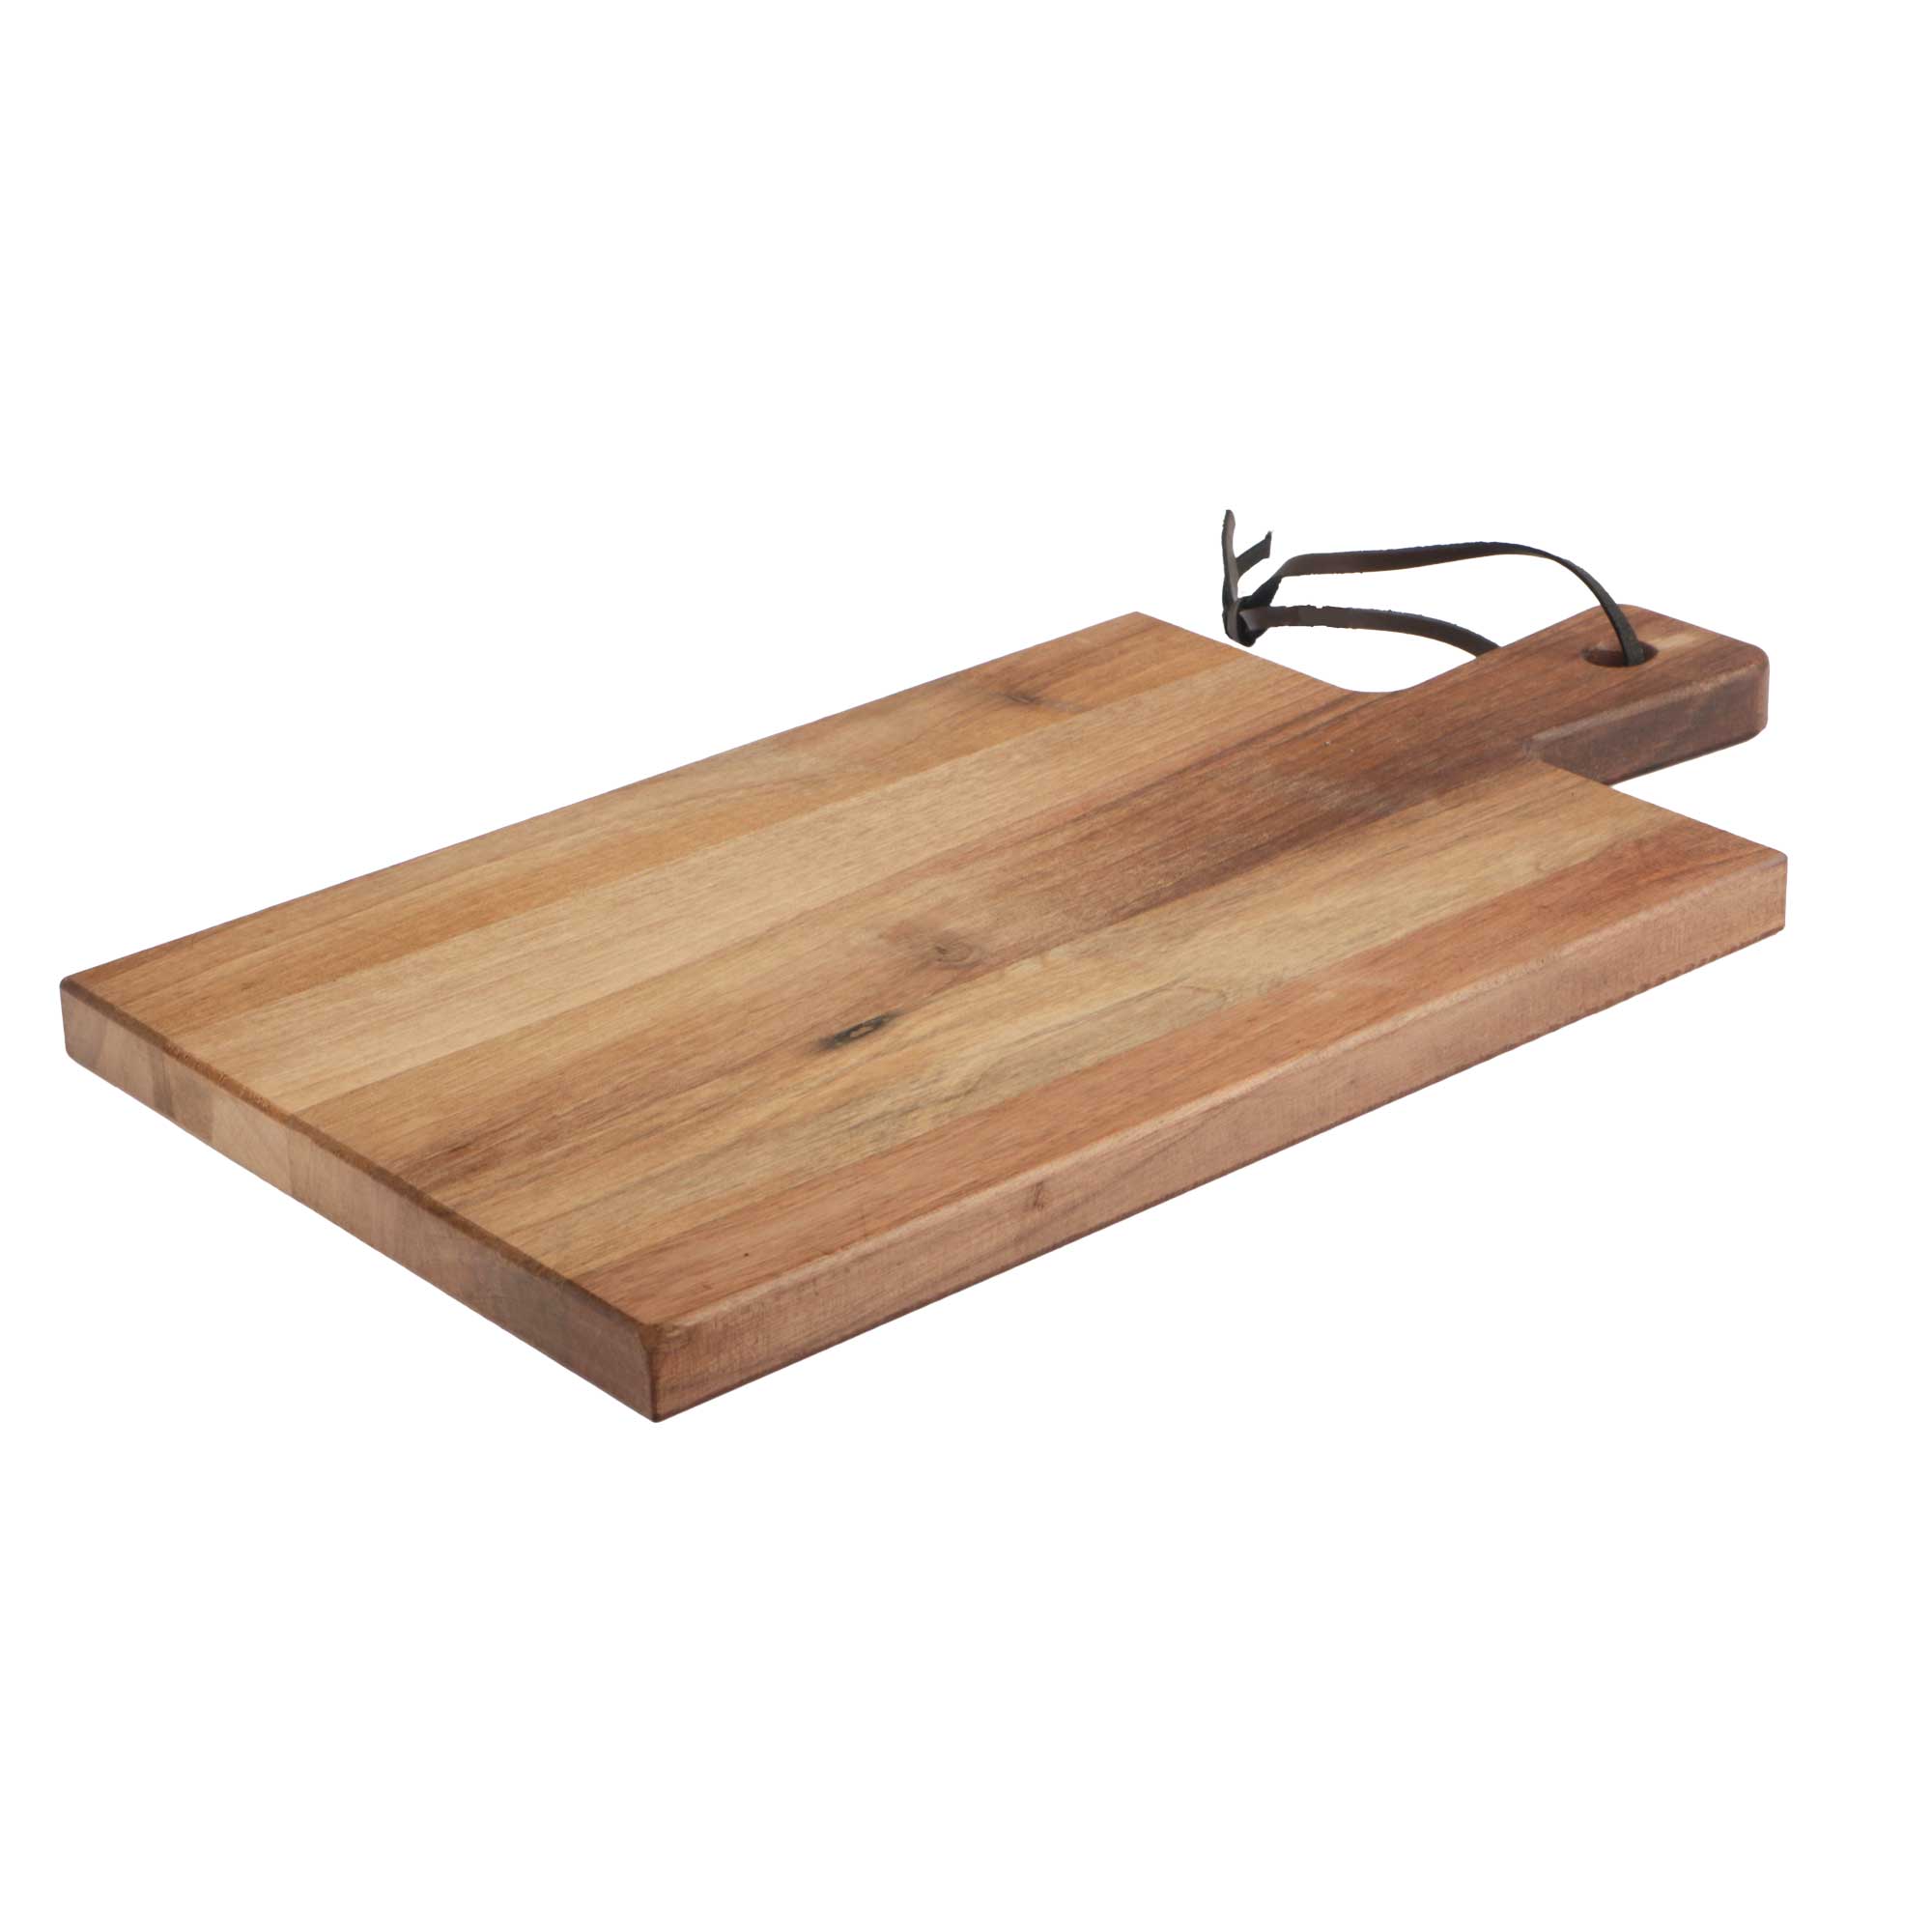 Afbeelding van Walnoot houten plank 38x20x2 cm deluxe met greep